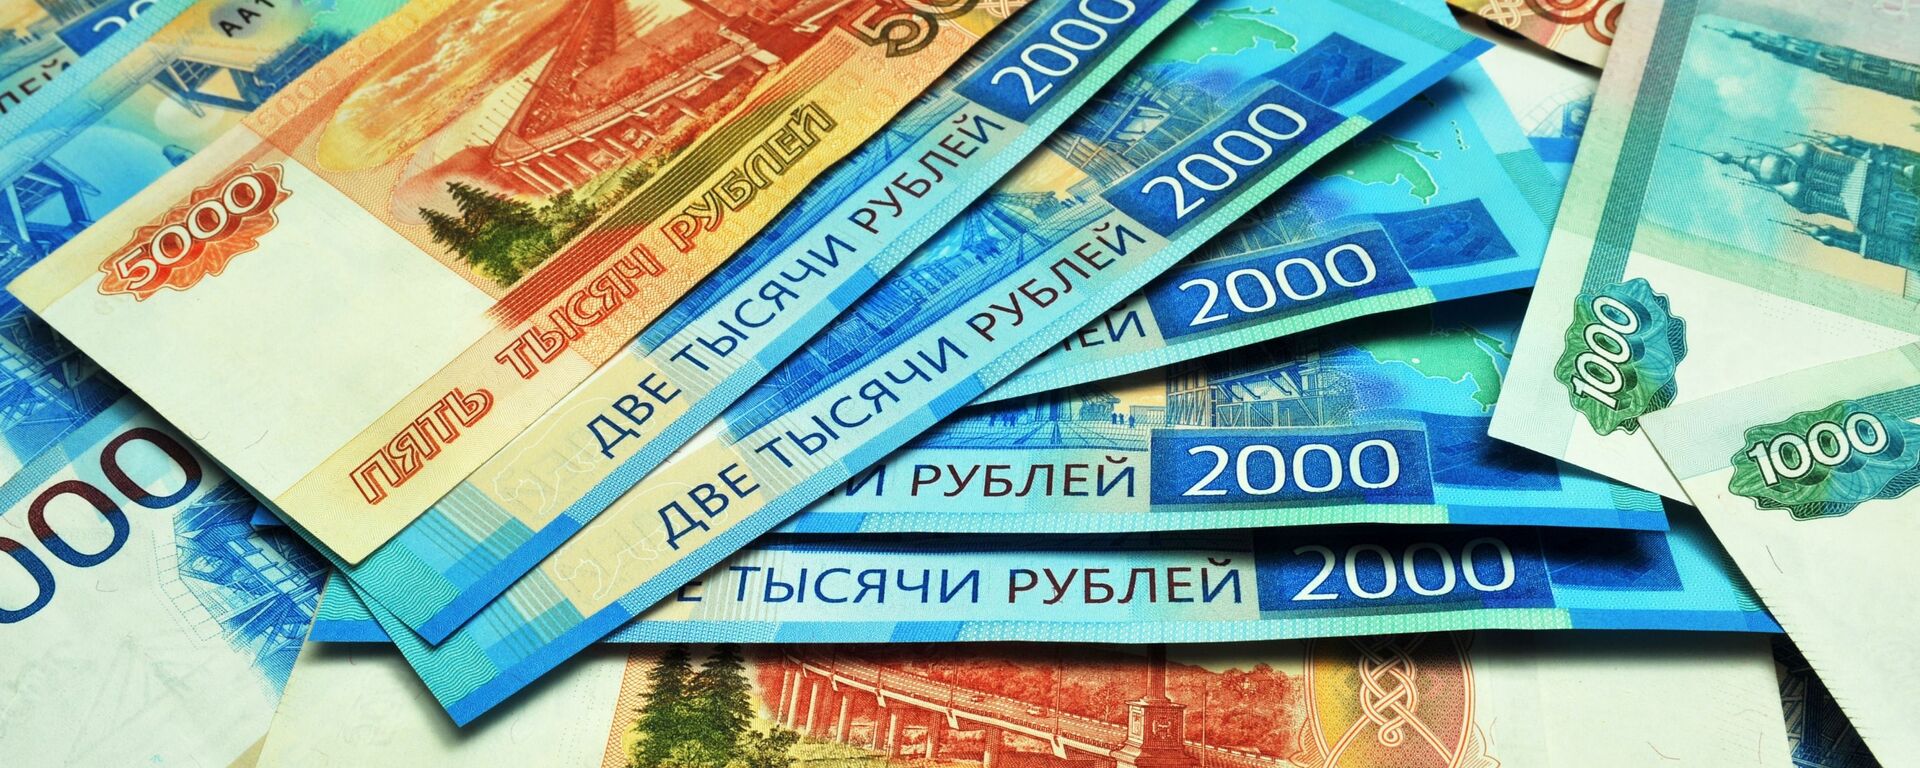 Banknoti nominalom 1000, 2000 i 5000 rubley. - Sputnik O‘zbekiston, 1920, 03.03.2021